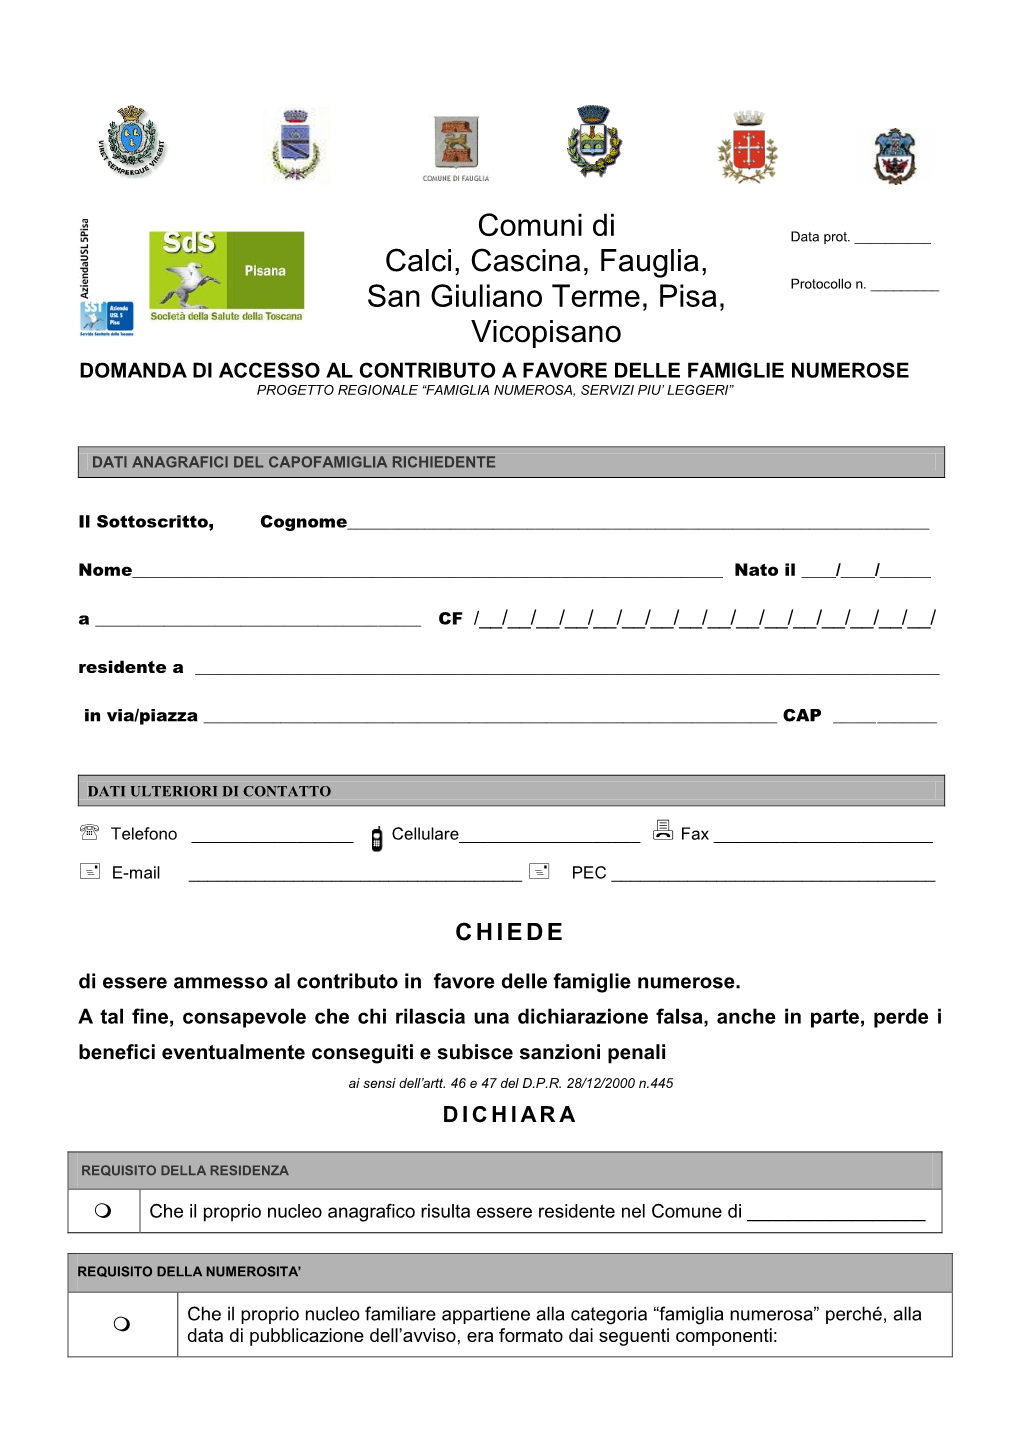 Comuni Di Calci, Cascina, Fauglia, San Giuliano Terme, Pisa